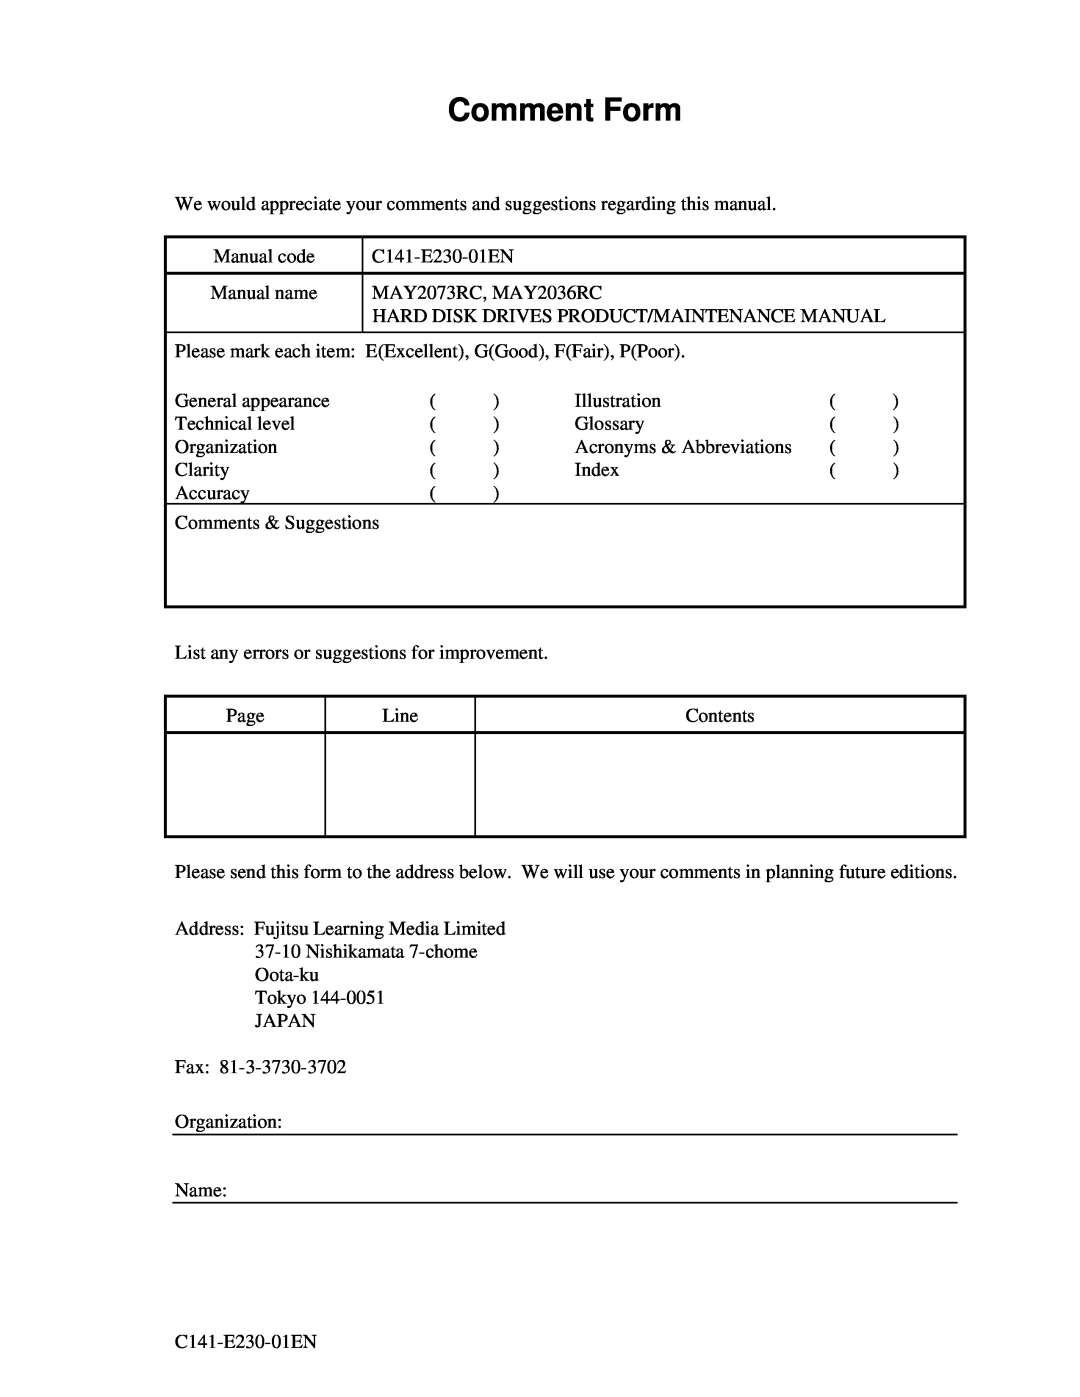 Fujitsu MAY2036RC, MAY2073RC manual Comment Form 